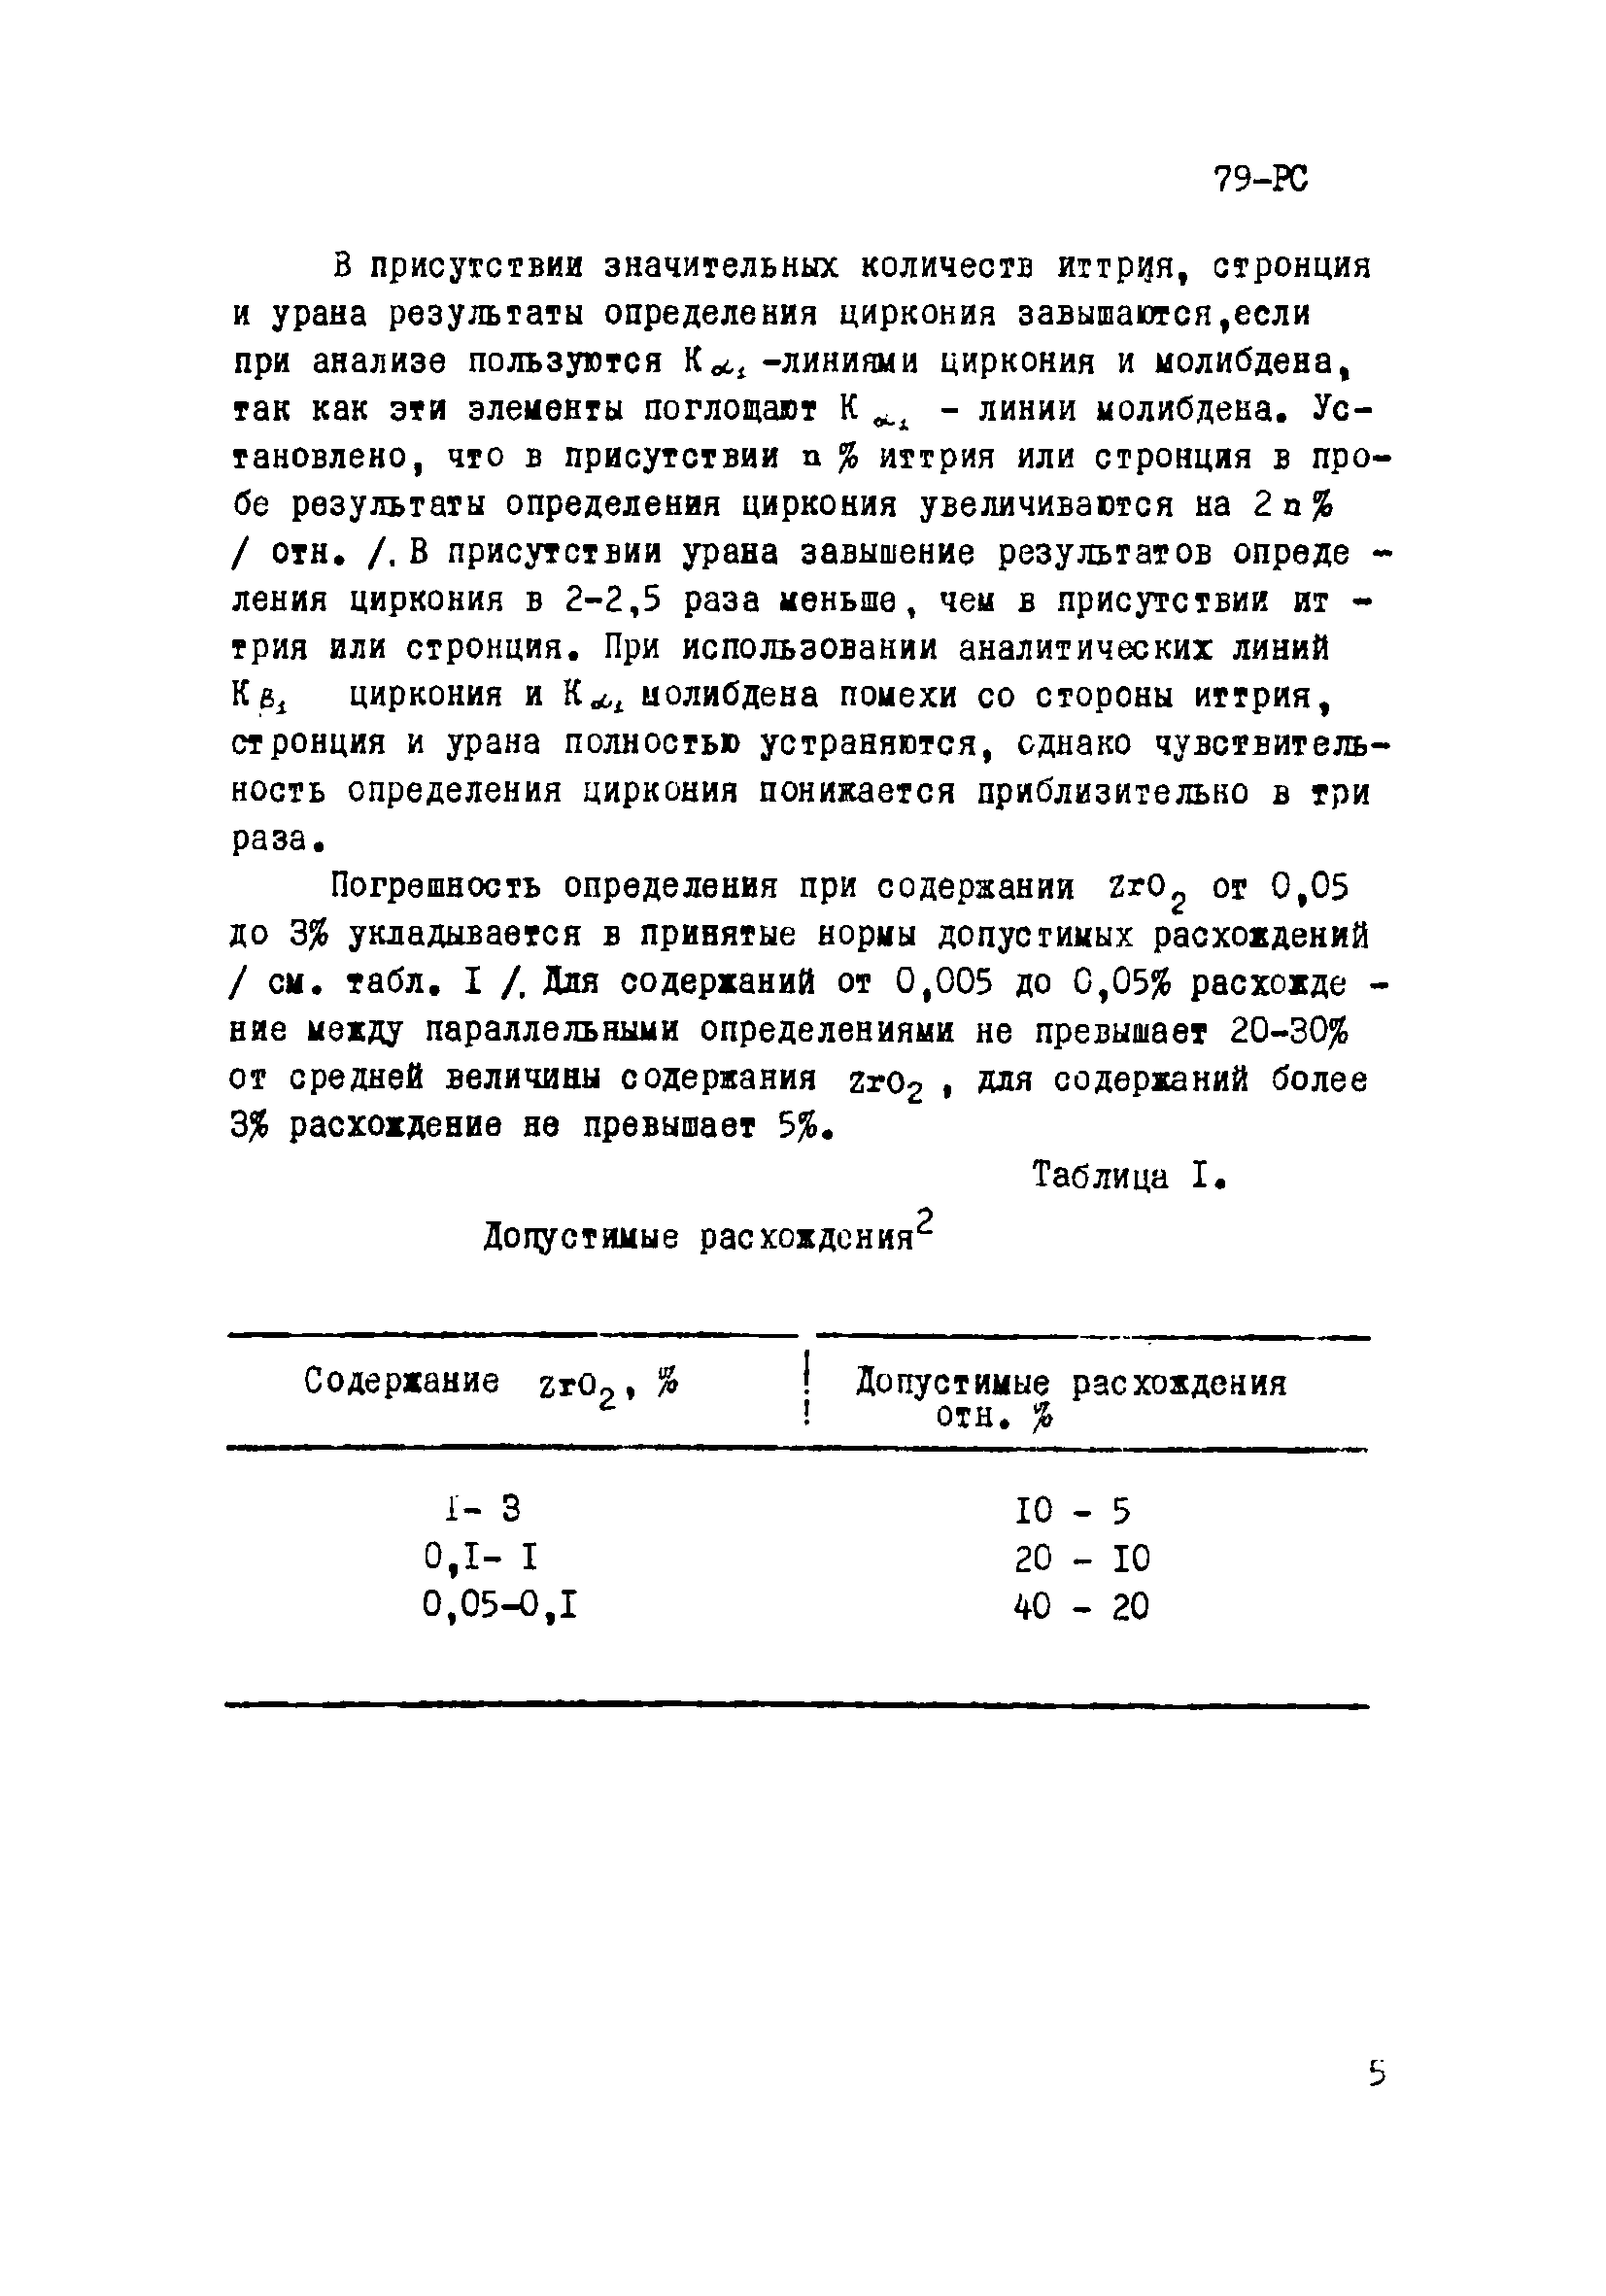 Инструкция НСАМ 79-РС